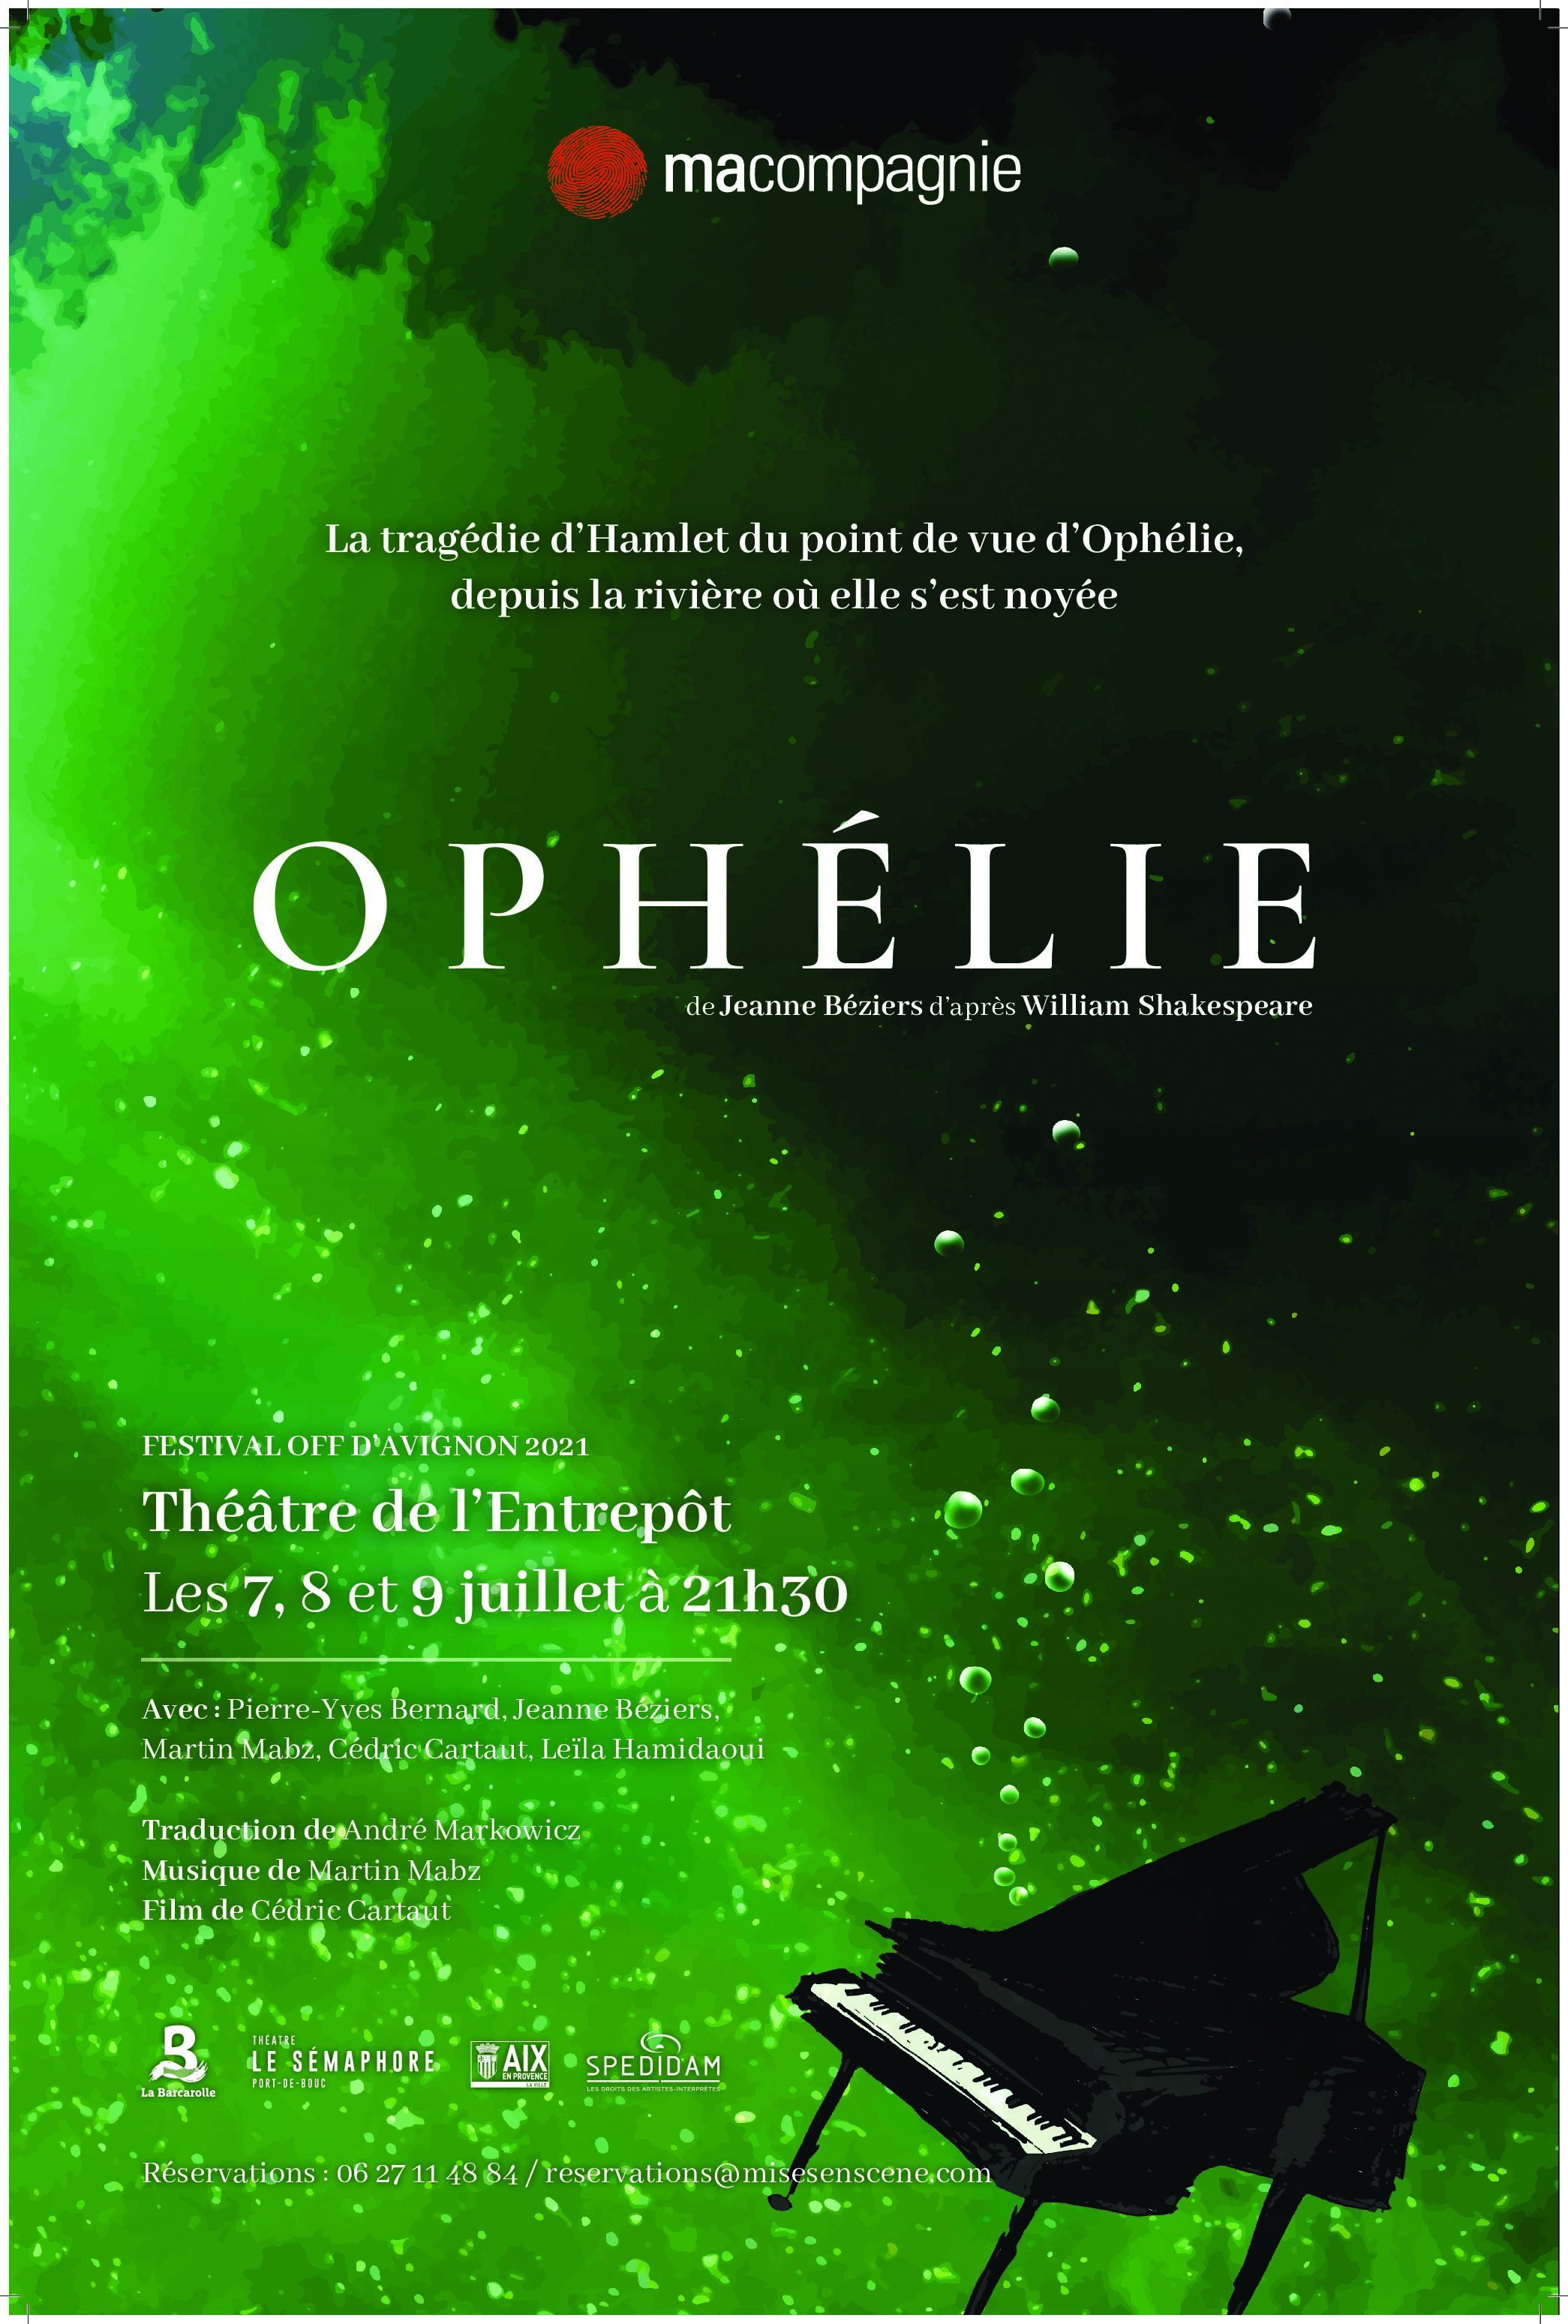 OPHELIE Théâtre de l’Entrepot // Avignon. 21 // Diffusion